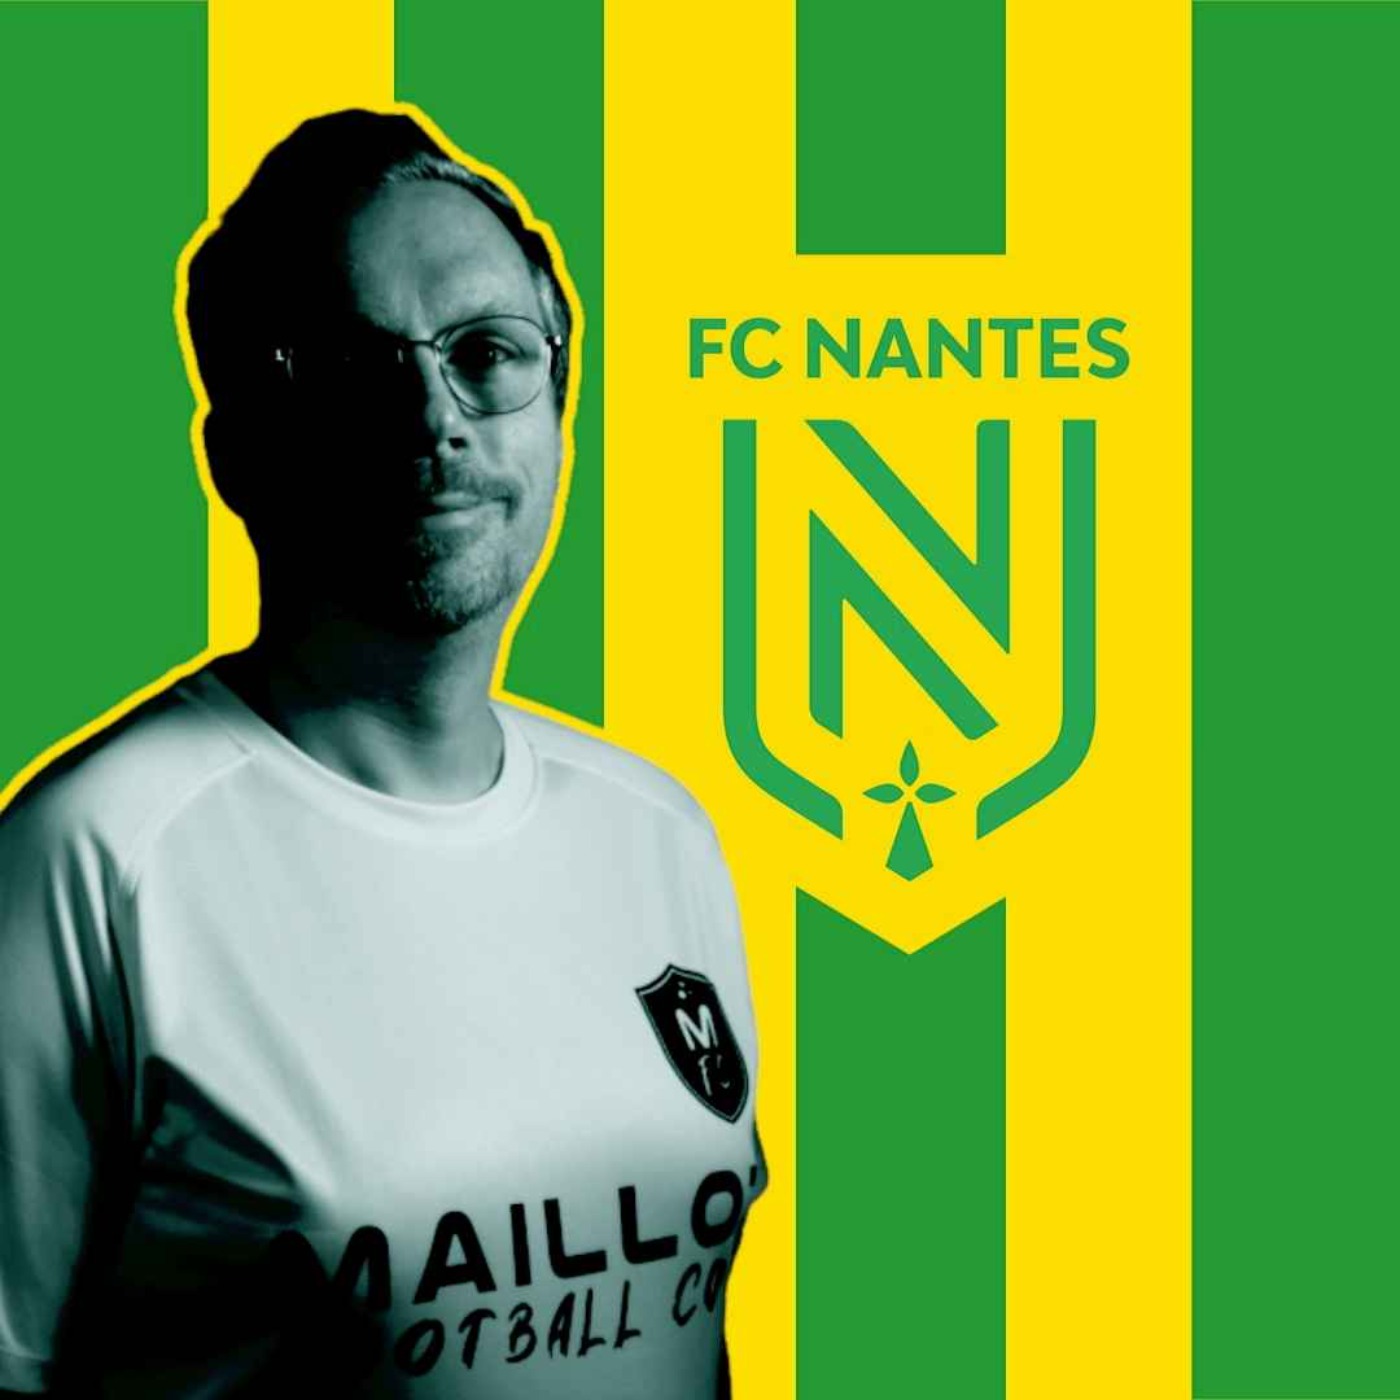 Le maillot du FC Nantes, une bête de course (hippique)